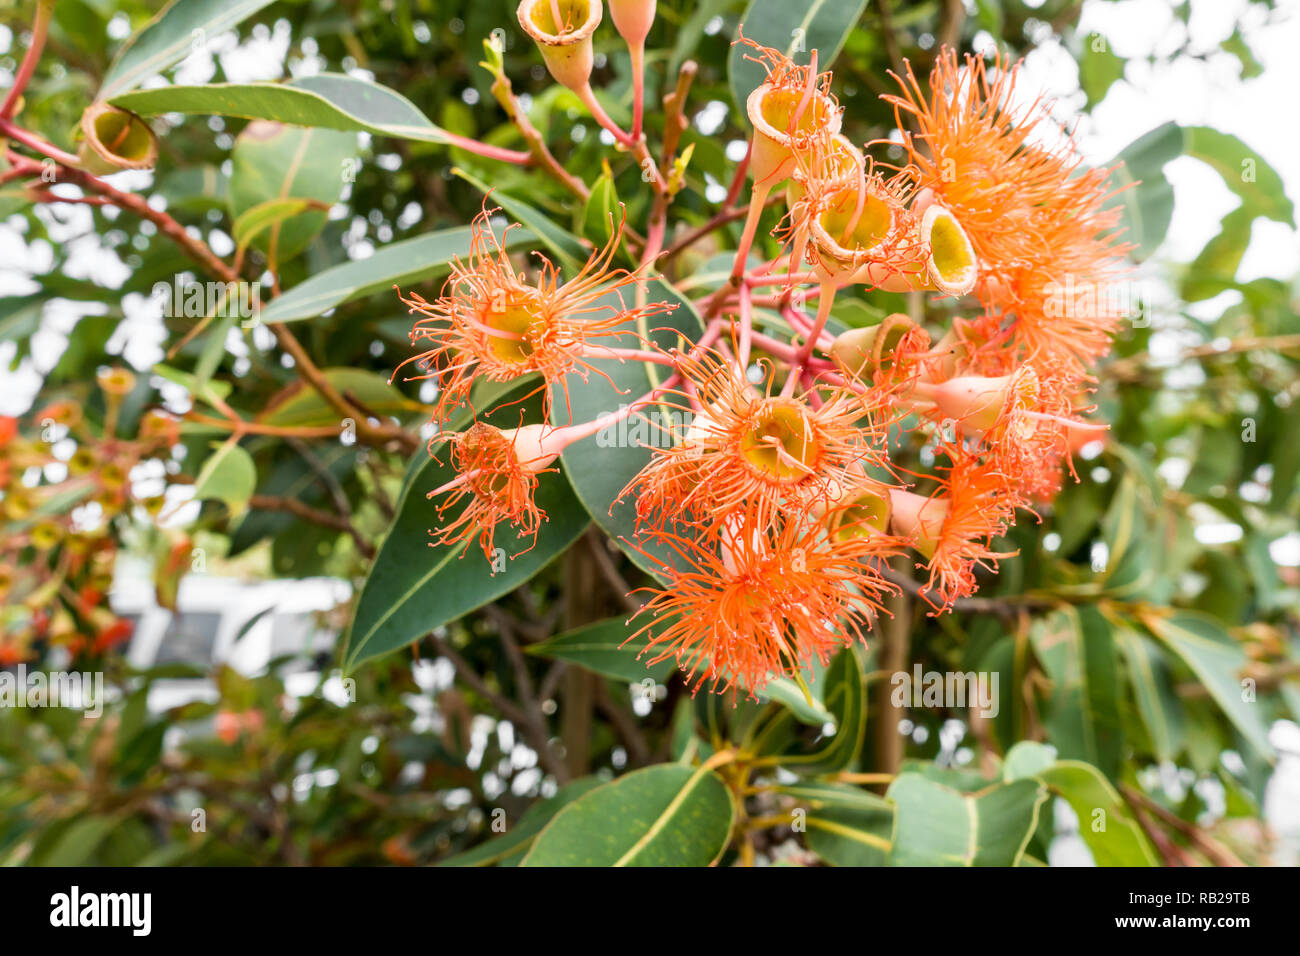 Fiori e foglie di australiano della Red Ironbark tree, Eucalyptus Sideroxylon rosea. Foto Stock